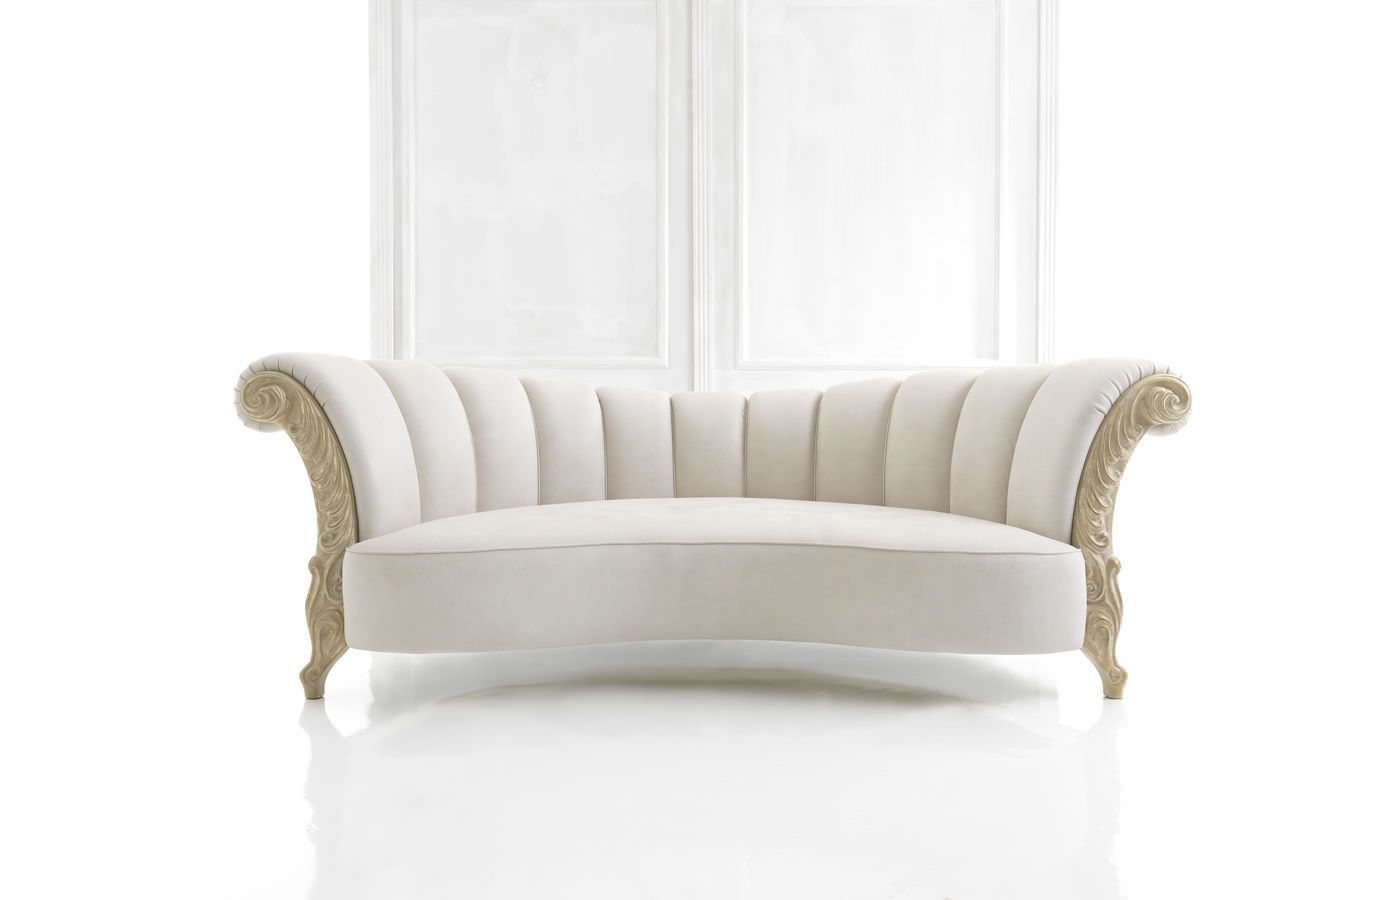 classic sofa designs - Google Search